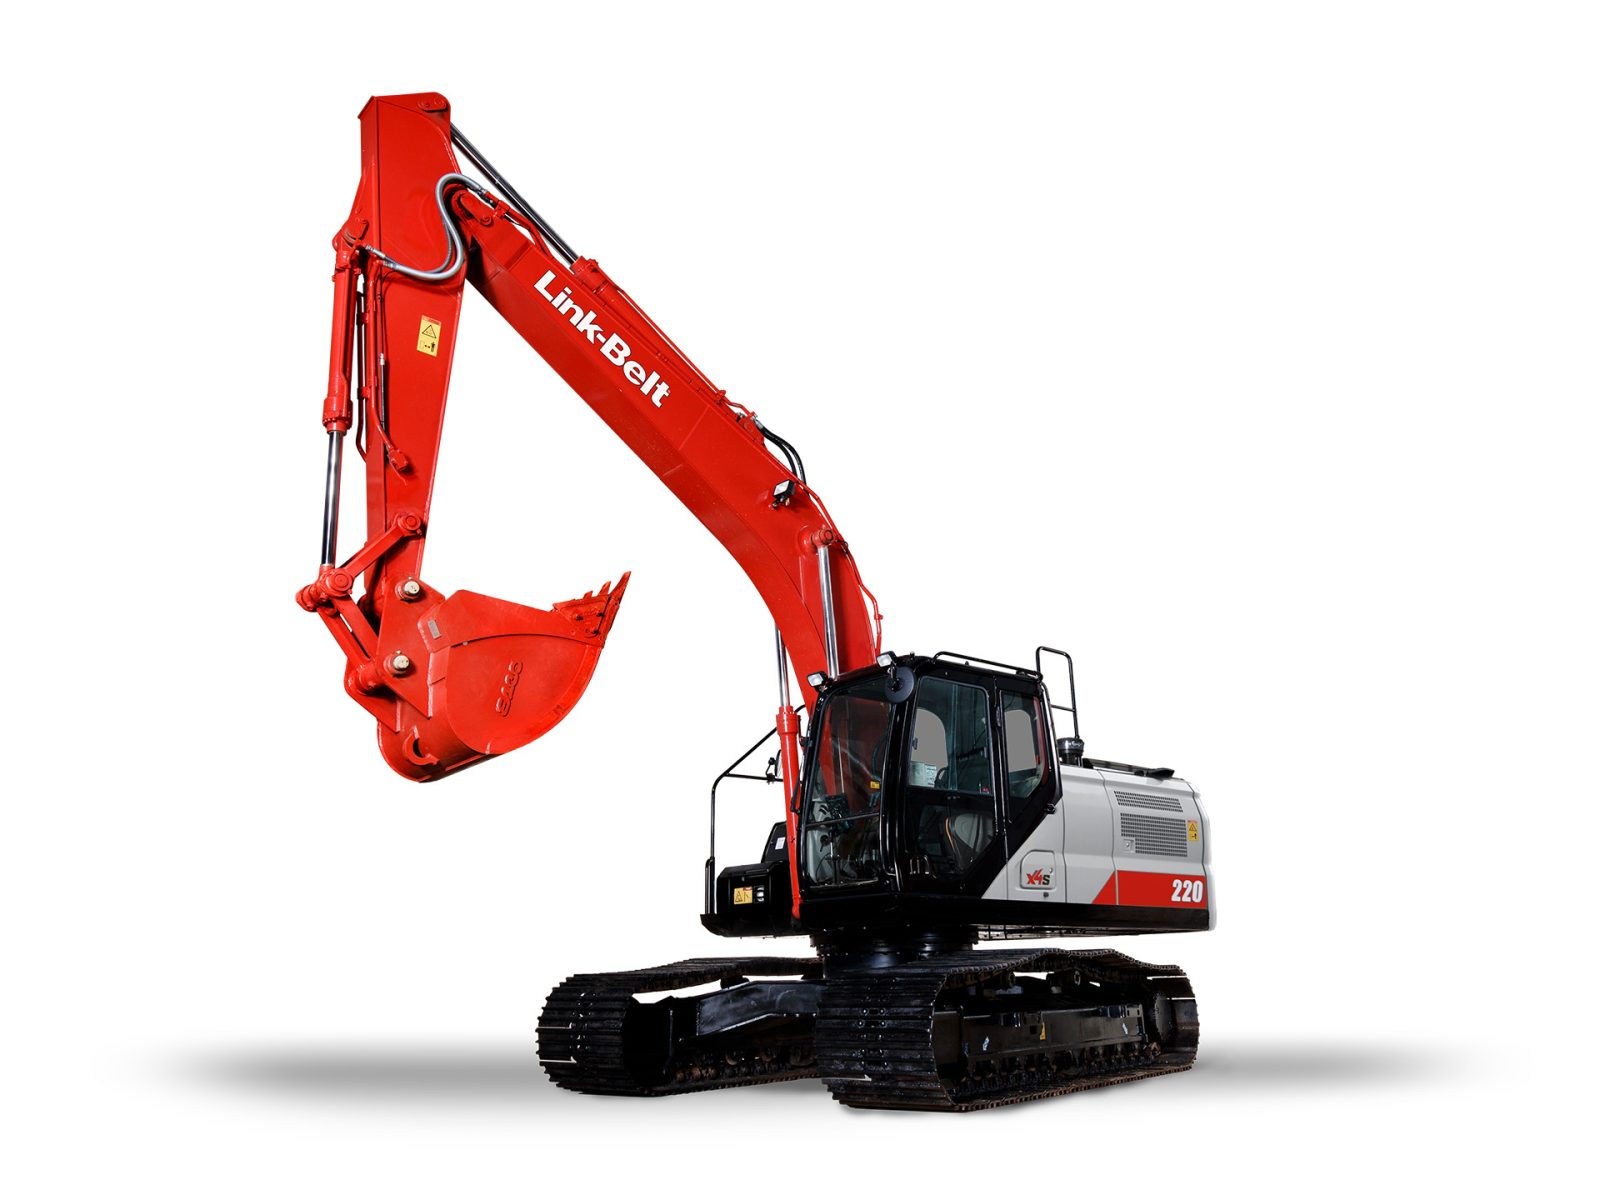 Link-Belt excavator 220X4S | Product Link-Belt excavator 220X4S